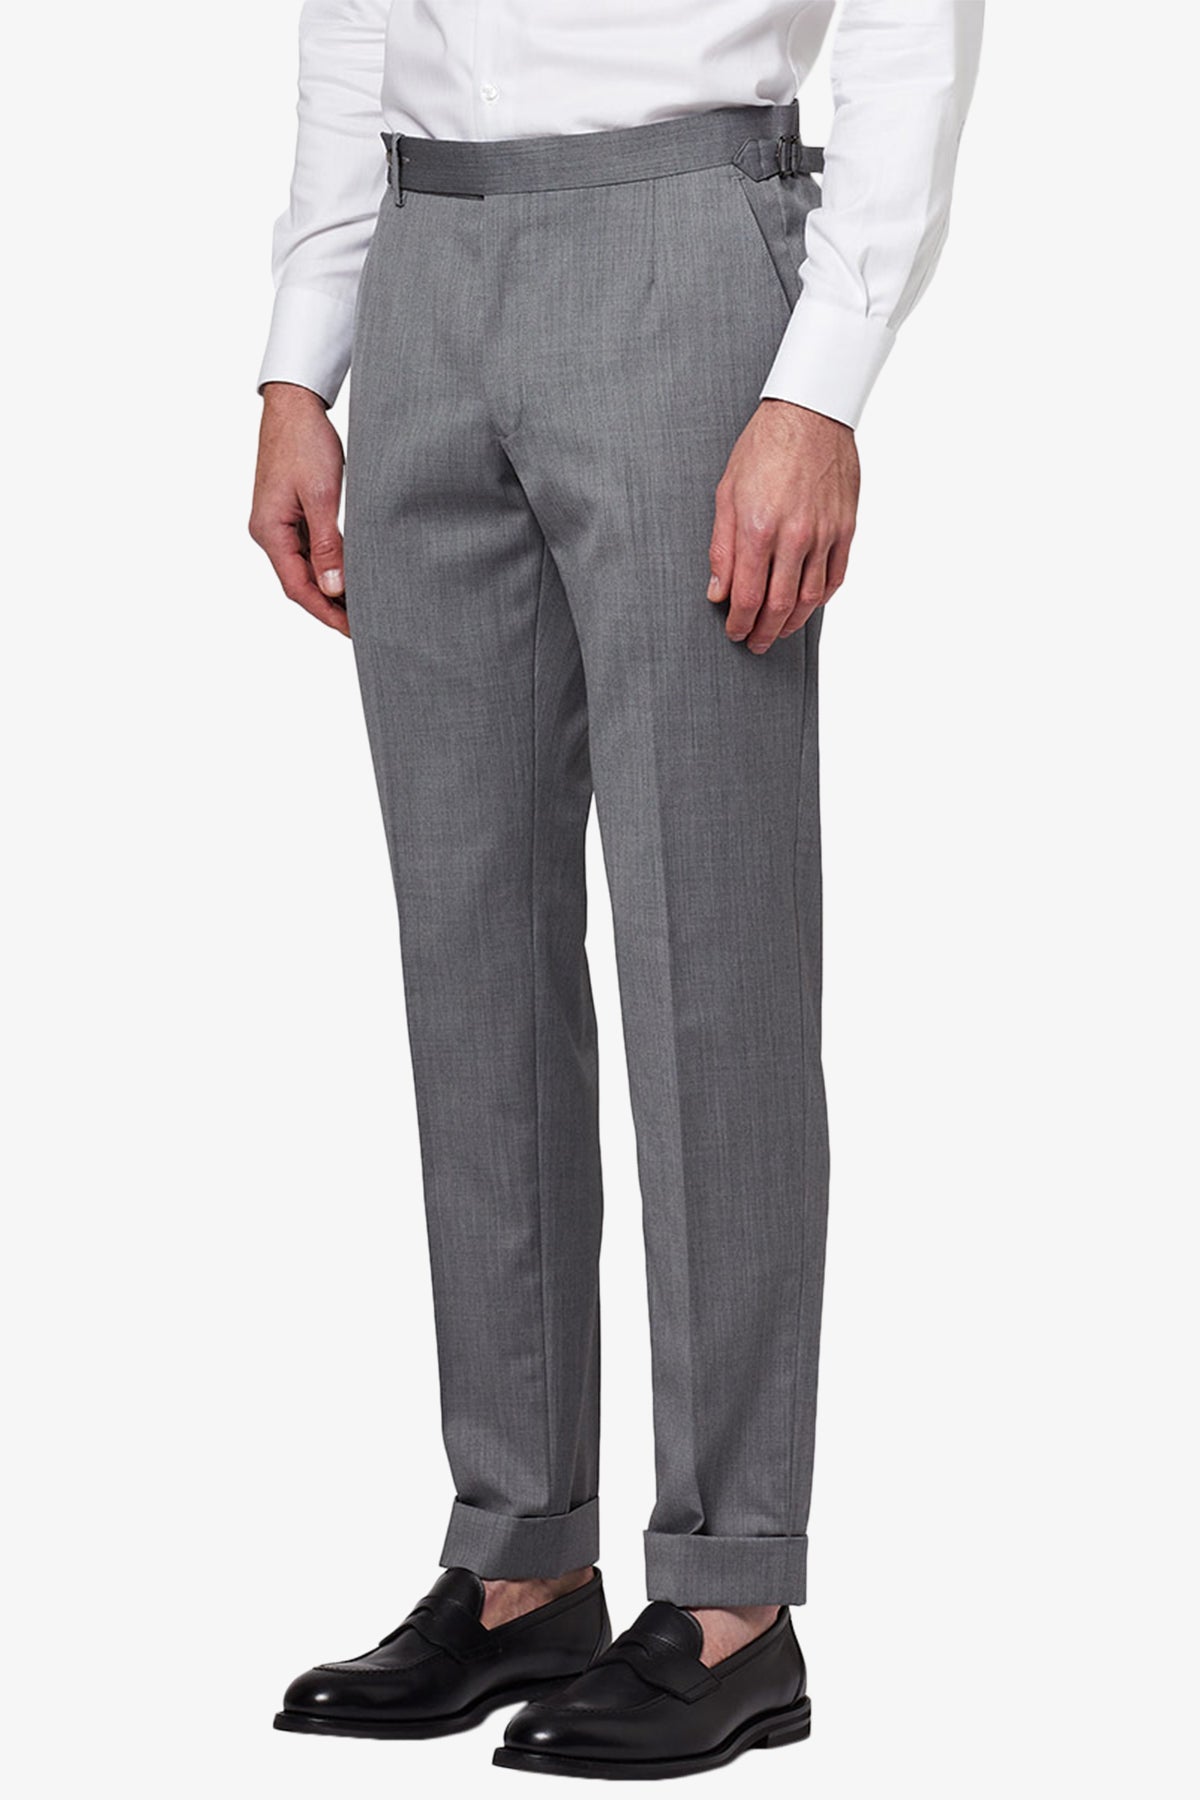 Kit - Light Grey Trouser